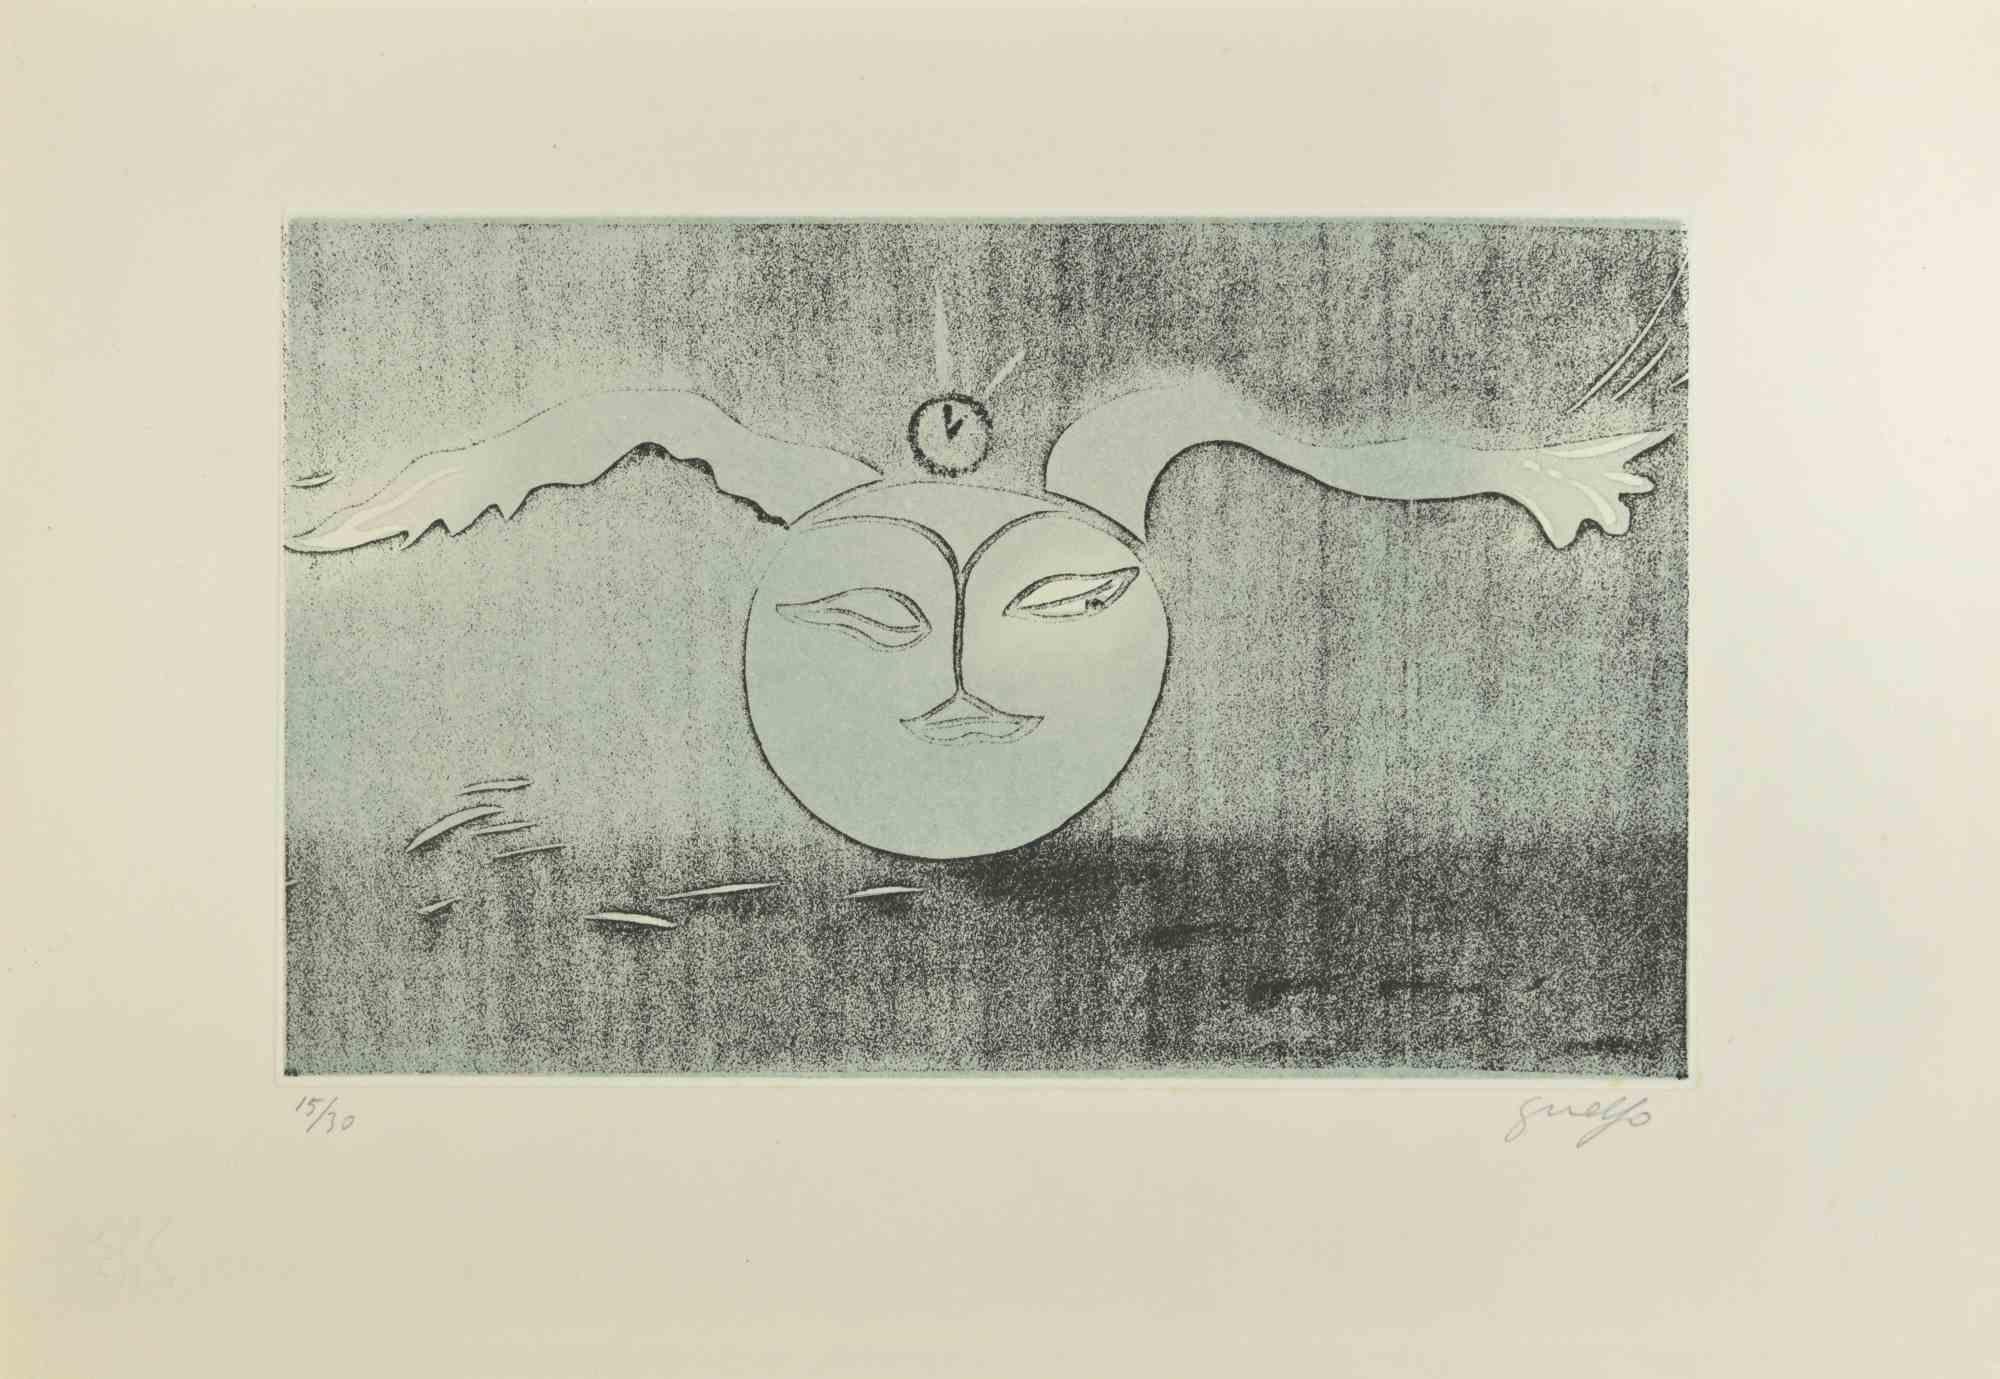 Vollmond  ist ein zeitgenössisches Kunstwerk des italienischen Künstlers Guelfo Bianchini (Ancona, 1937) aus dem Jahr 1978.

Farbige Original-Radierung auf Papier. 

Handsigniert  mit Bleistift in der rechten unteren Ecke: Guelfo . In der linken